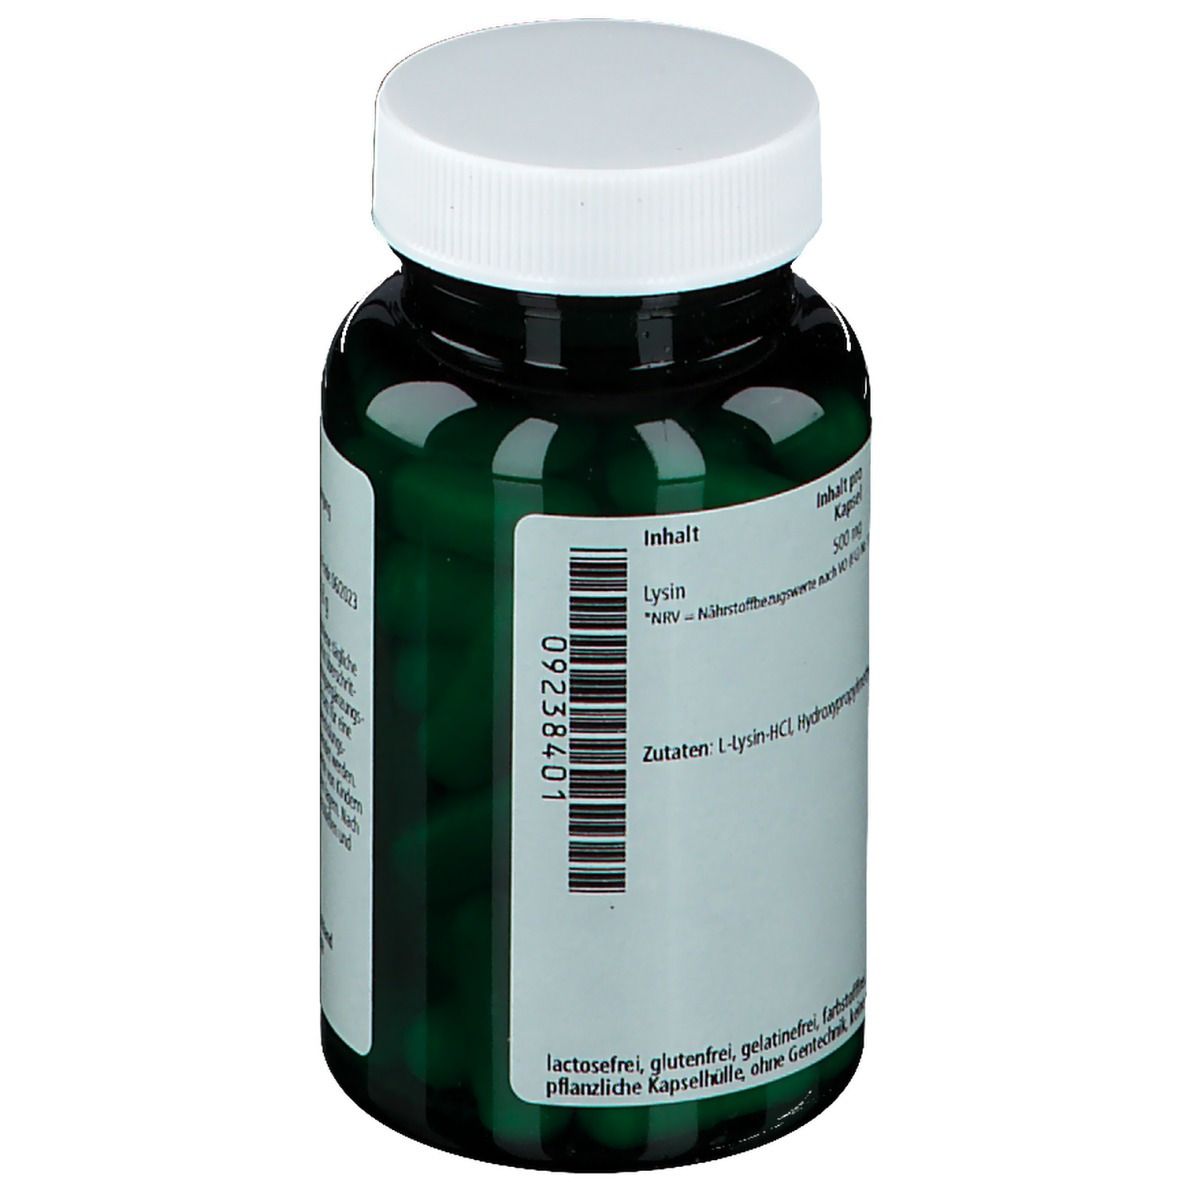 green line L-Lysin 500 mg